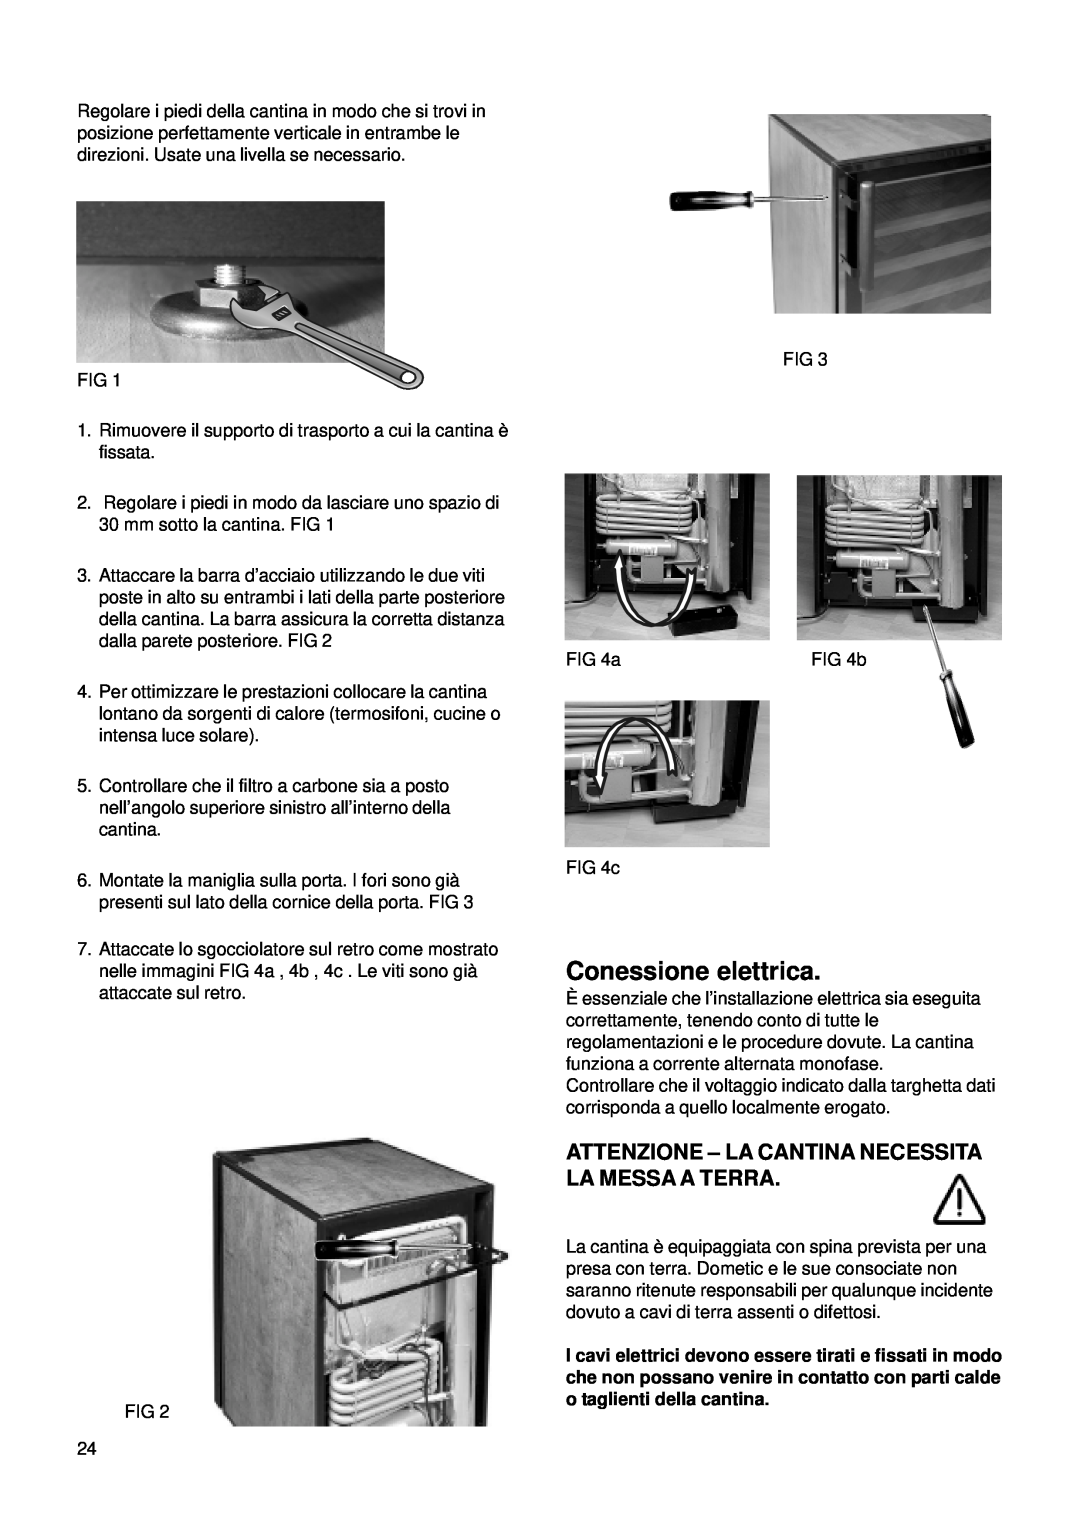 Dometic CS 52 instruction manual Conessione elettrica, Attenzione - La Cantina Necessita La Messa A Terra 